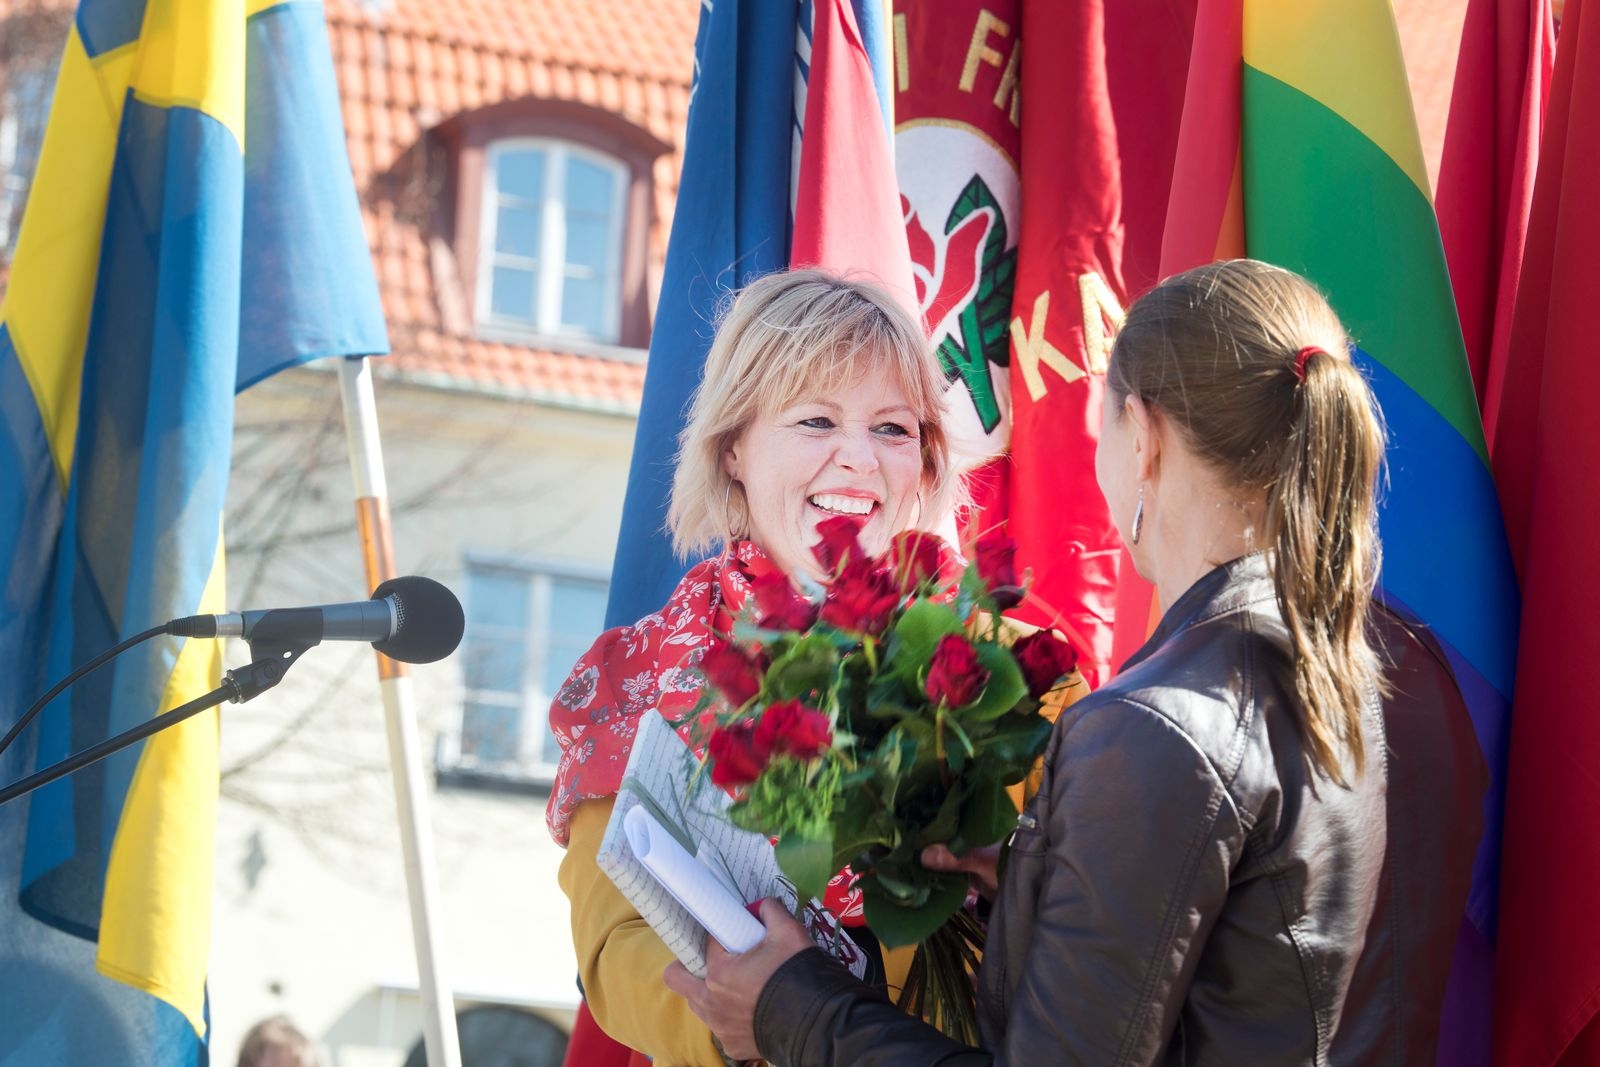 1 maj är en historisk dag på många sätt.
Inte minst för Johanna Beijer (S).
Sölvesborgs kommunalrådskandidat gjorde offentlig debut.